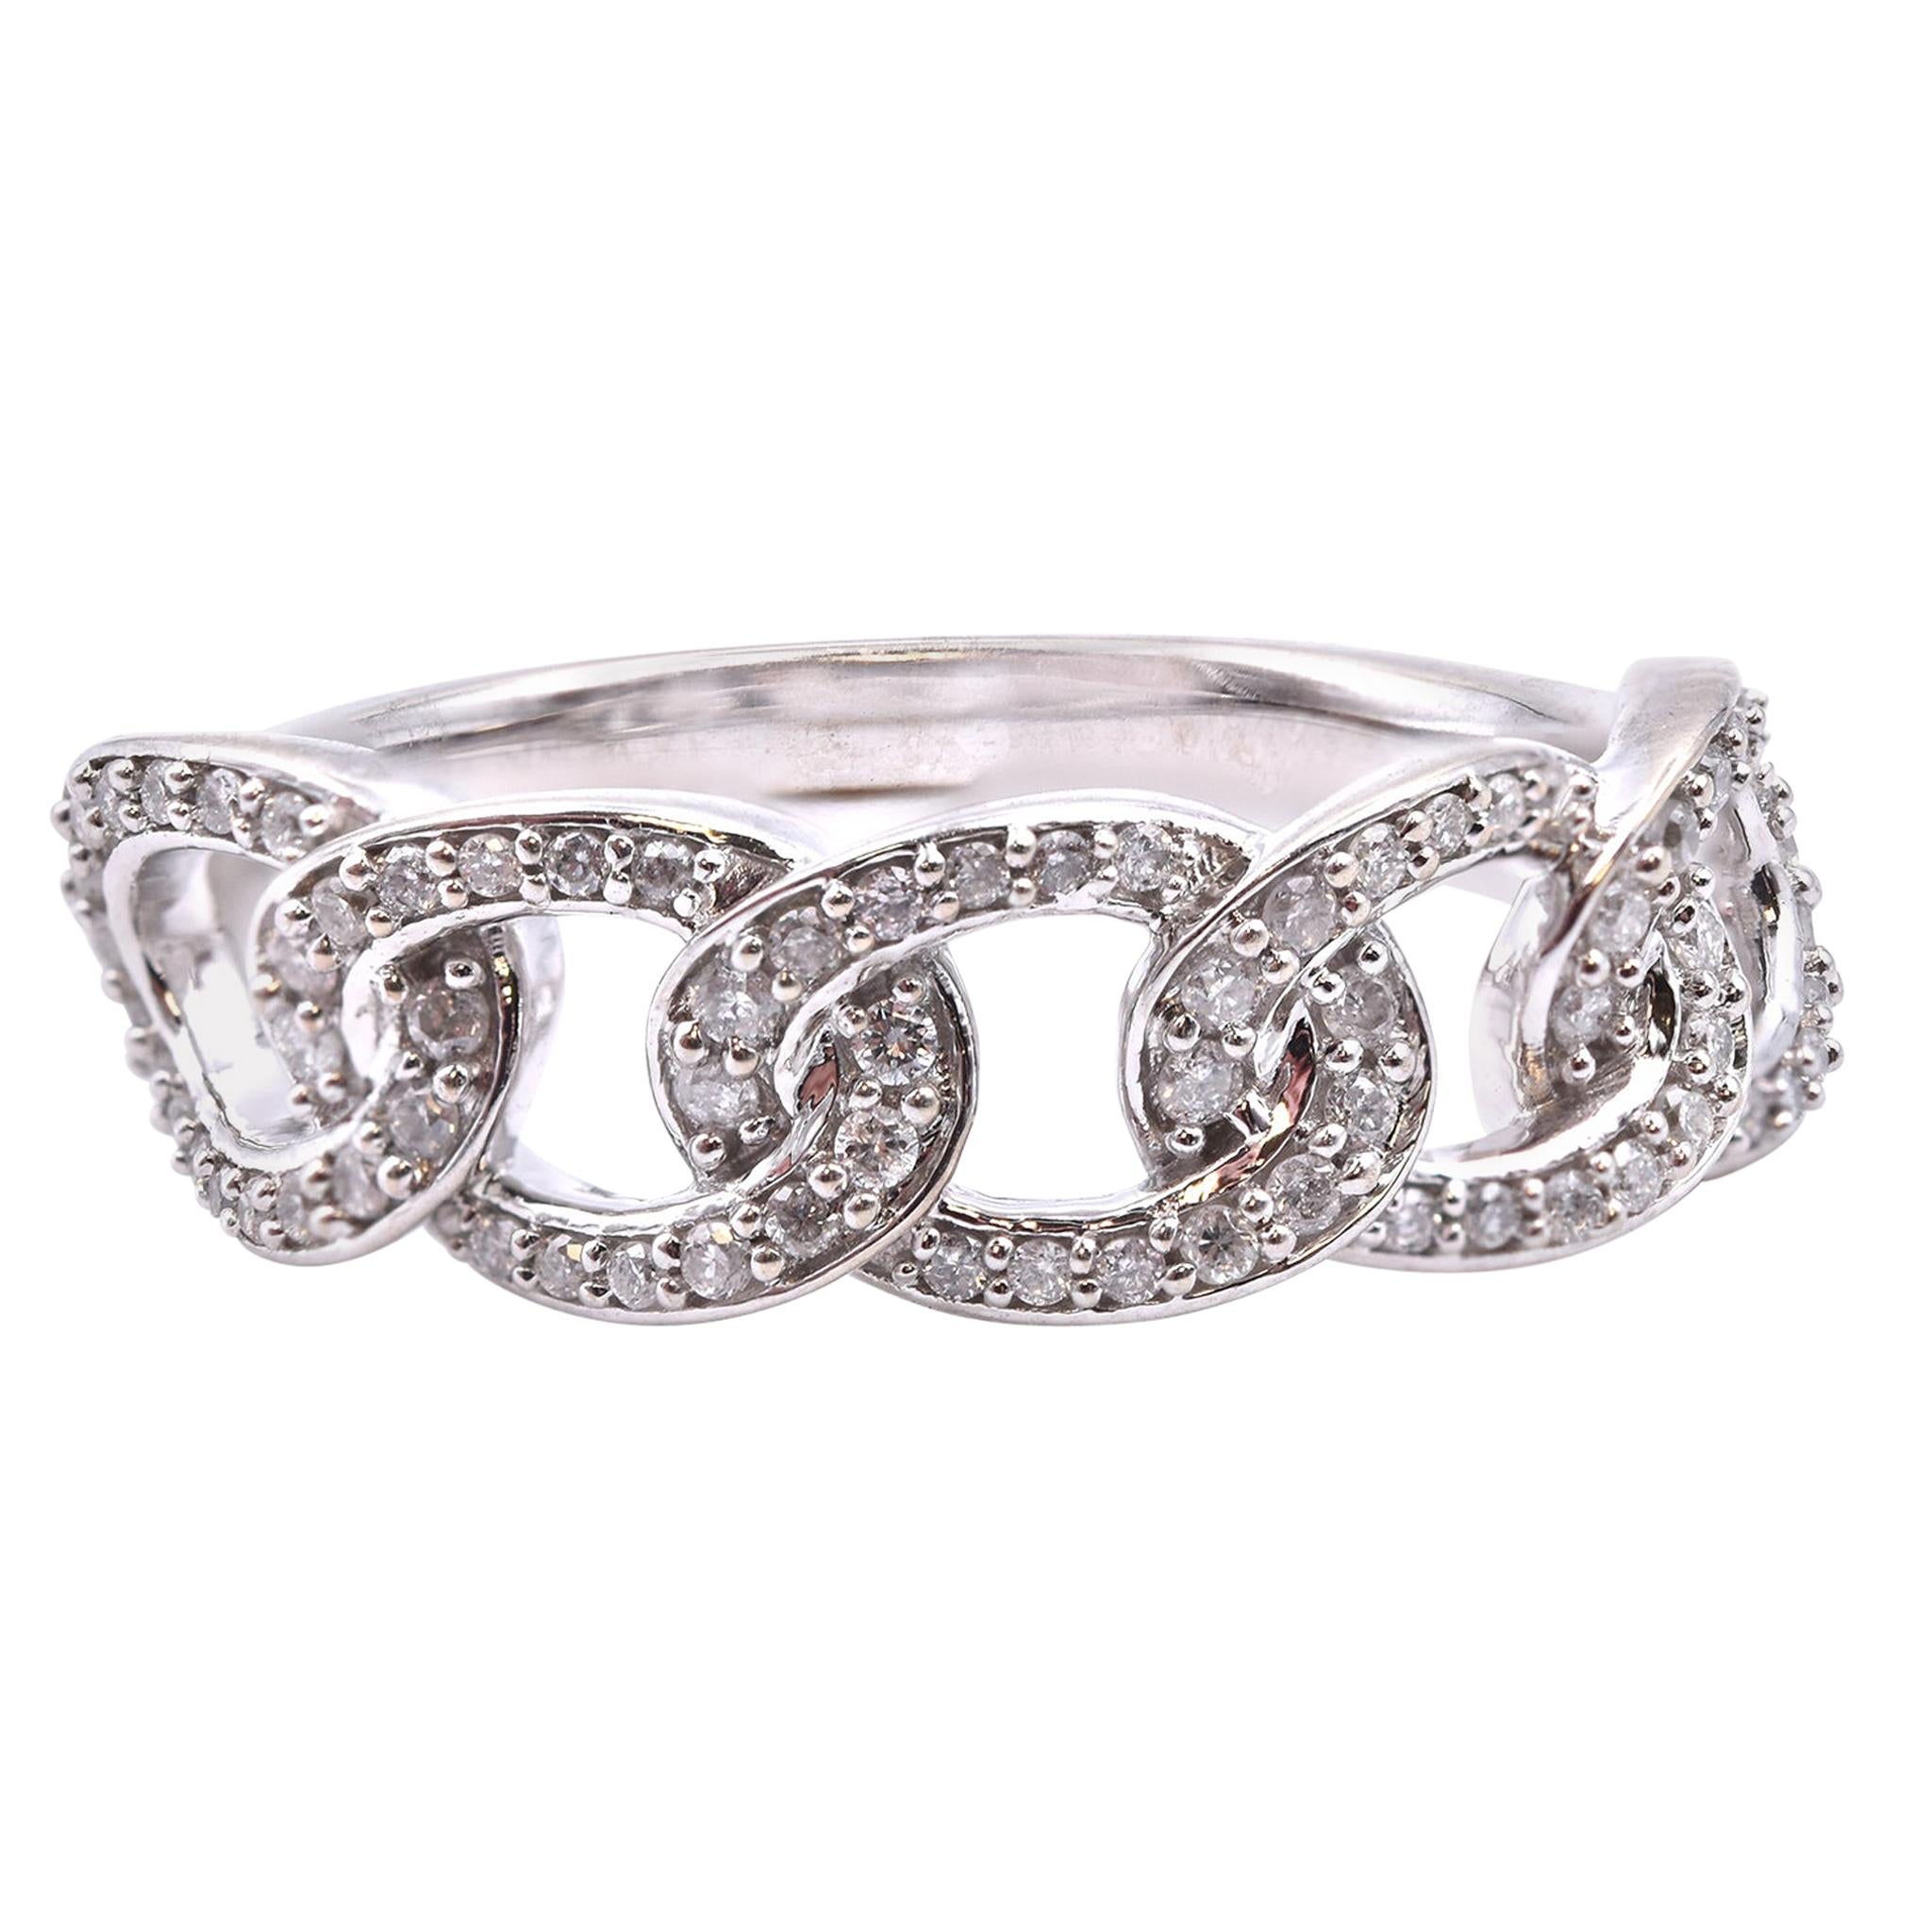 10 Karat White Gold Diamond Link Fashion Ring